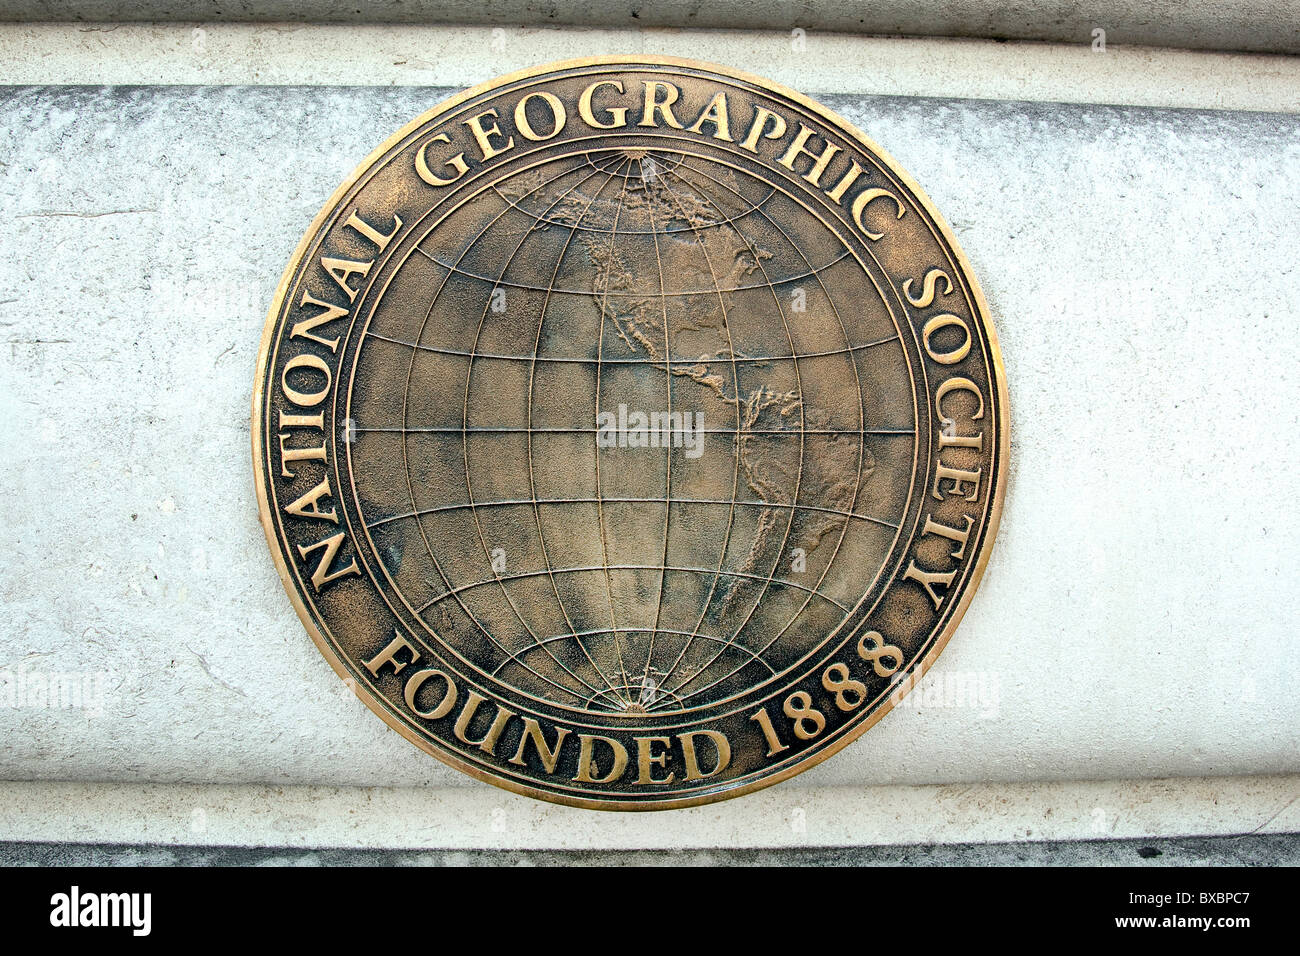 Logo de la National Geographic Society, de la société qui prend en charge la géographie, Londres, Angleterre, Royaume-Uni, Europe Banque D'Images